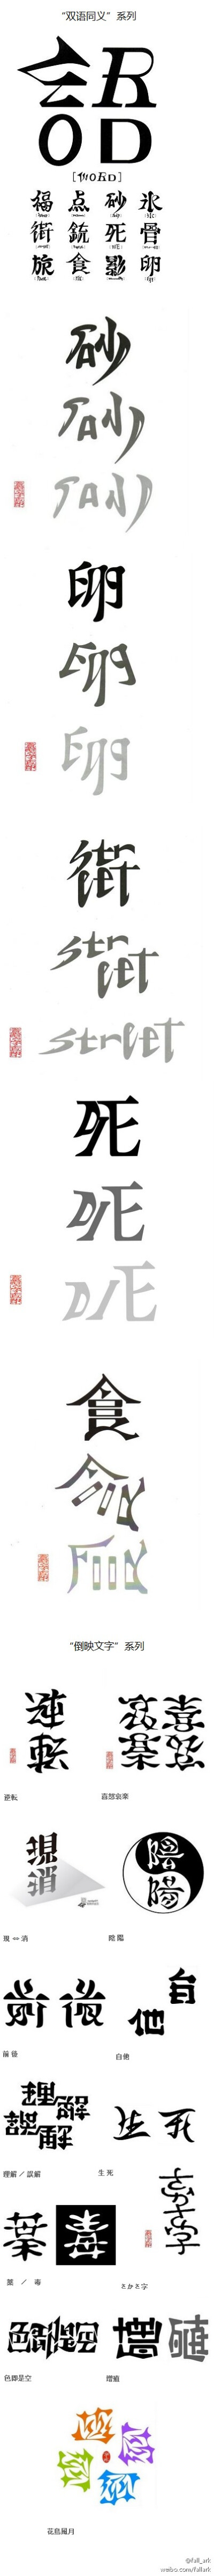 有点意思的“双语同义”字系列和“倒映文字”系列，作者是个日本的做文字和设计的人，名叫“意瞑字査印”。